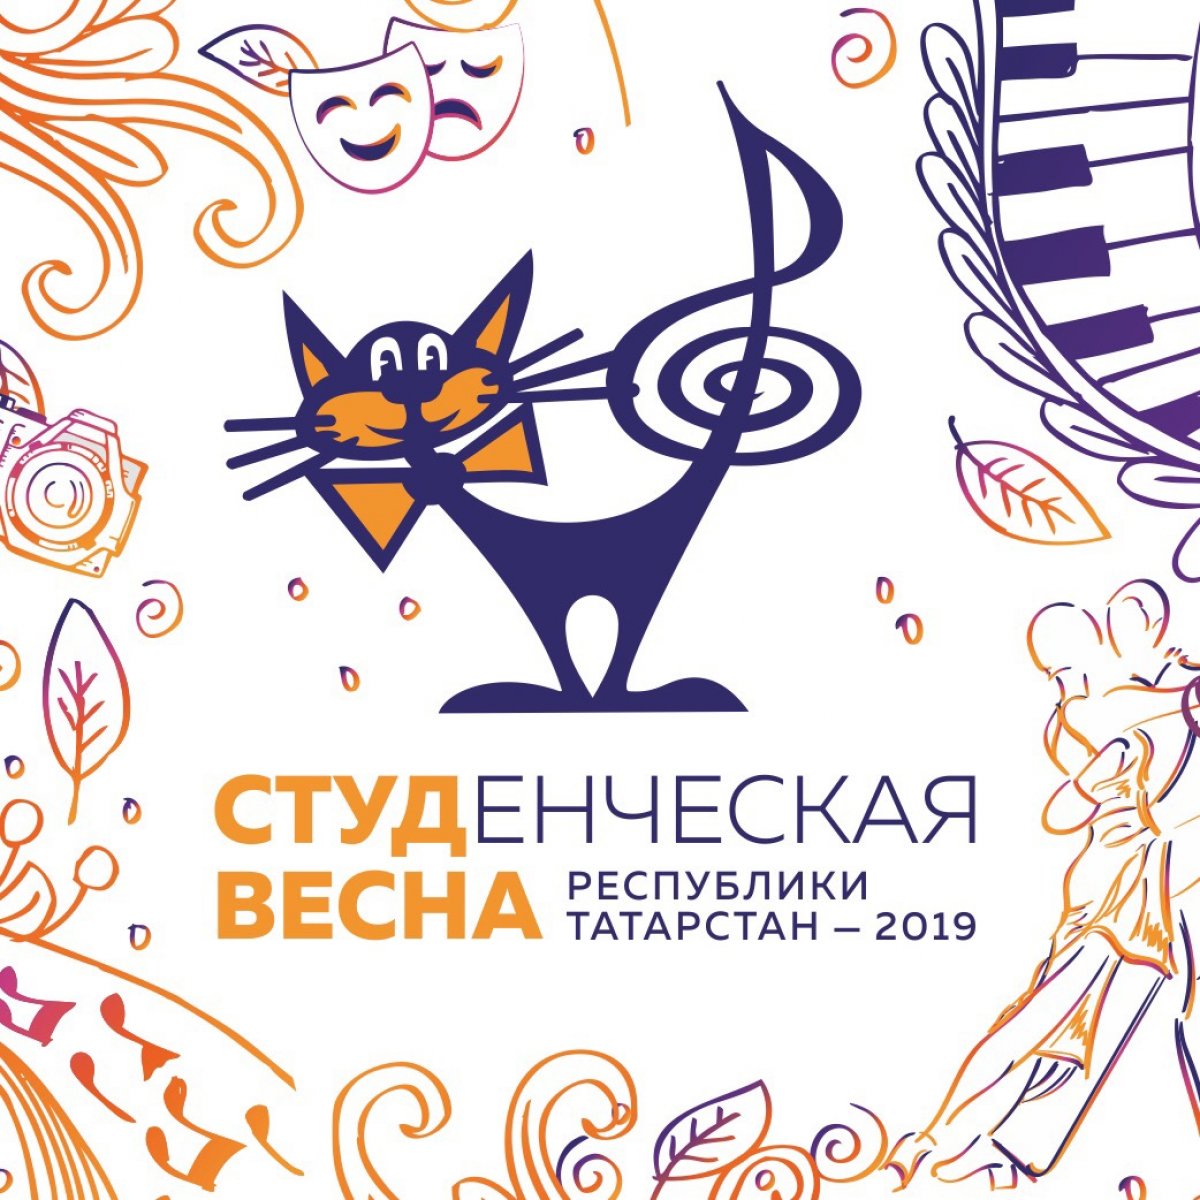 ☀Студенческая весна Республики Татарстан уже в полном разгаре! Фестиваль является площадкой для выявления и поддержки талантливых студентов.